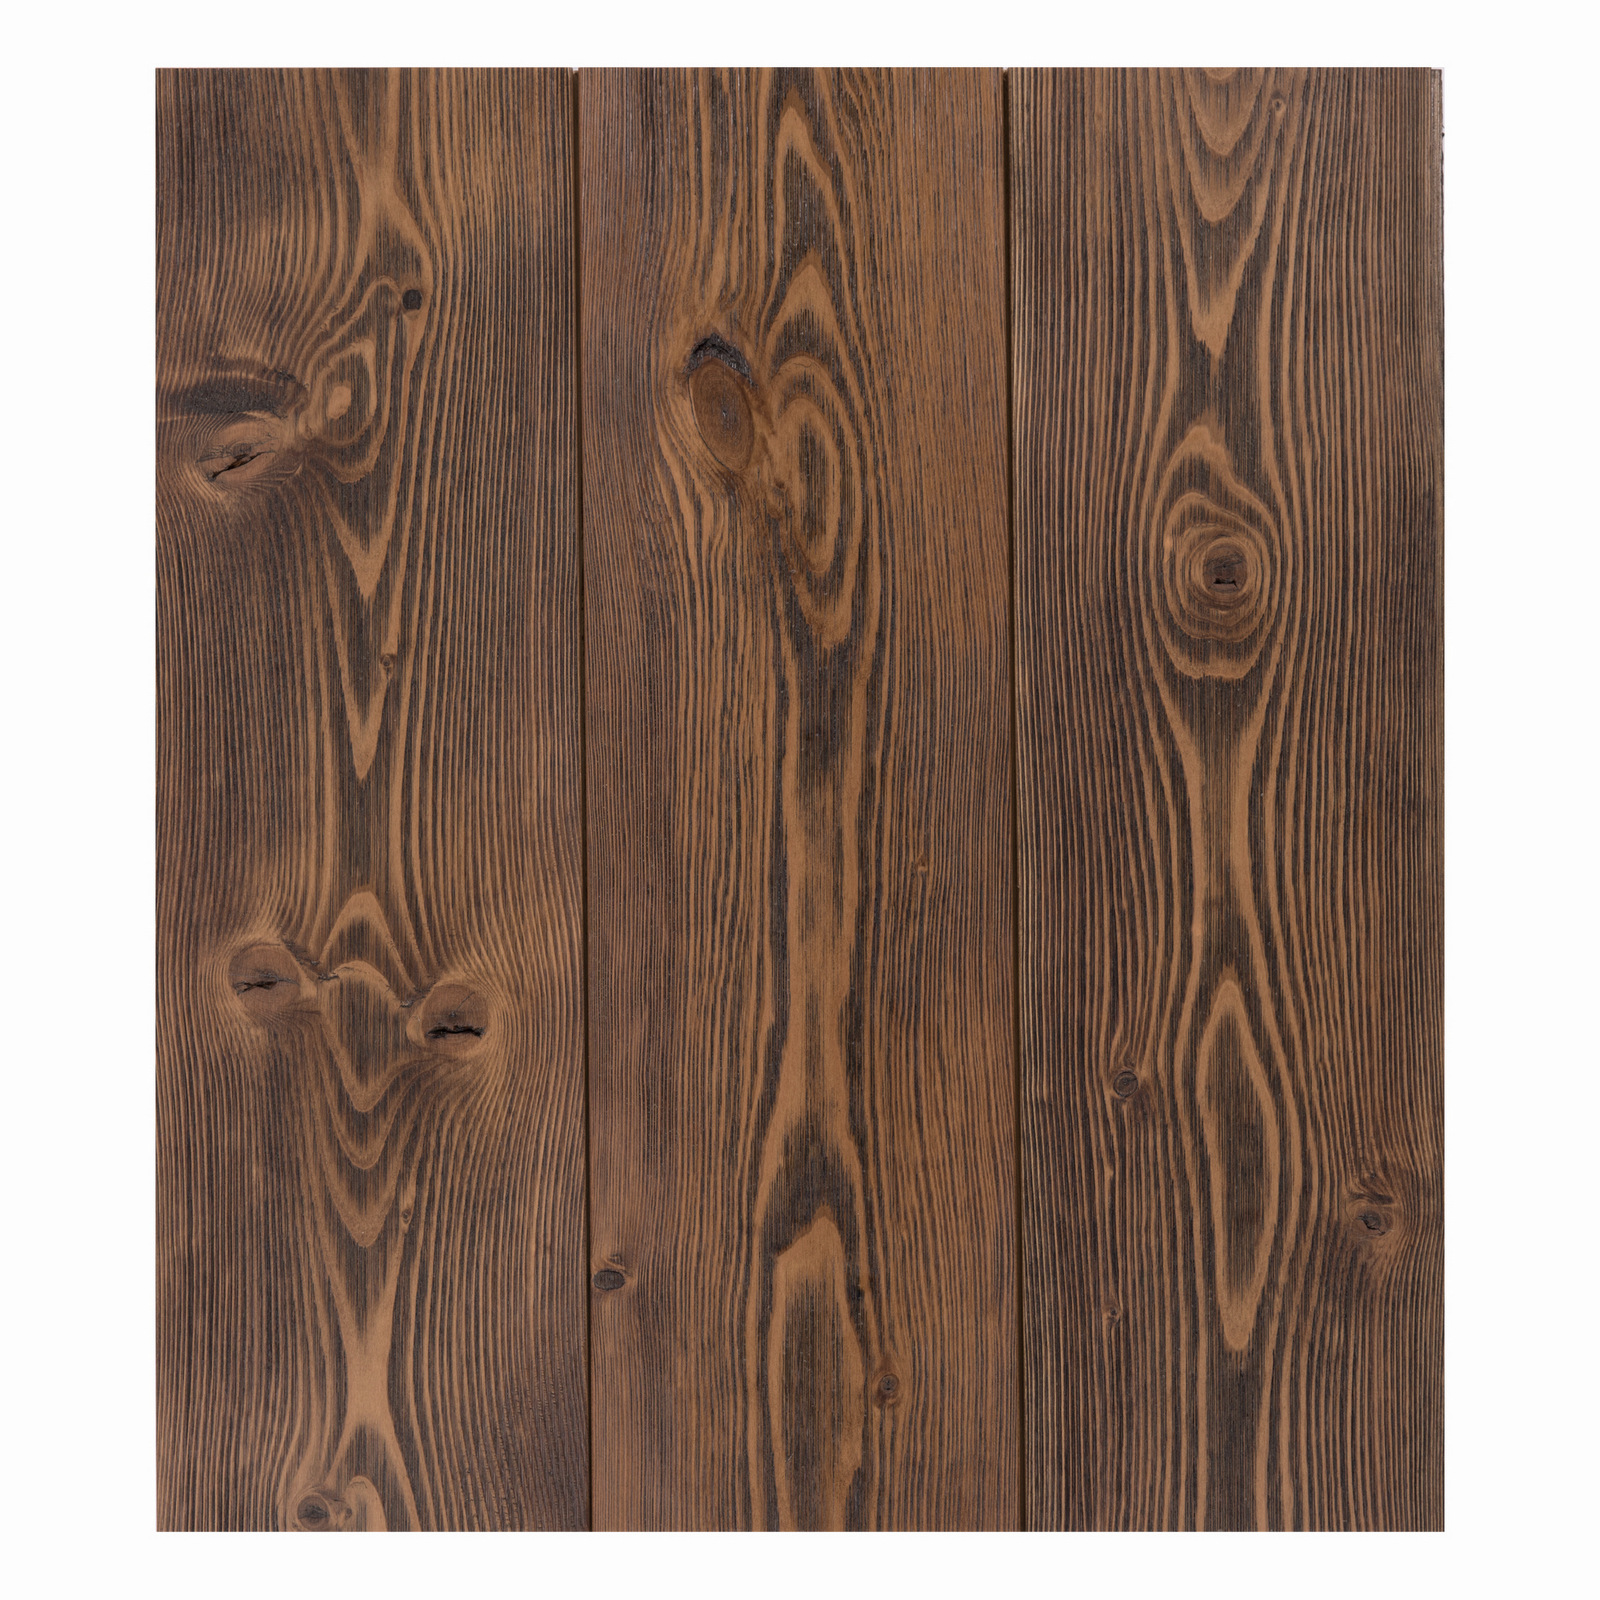 UV brown reclaimed wood